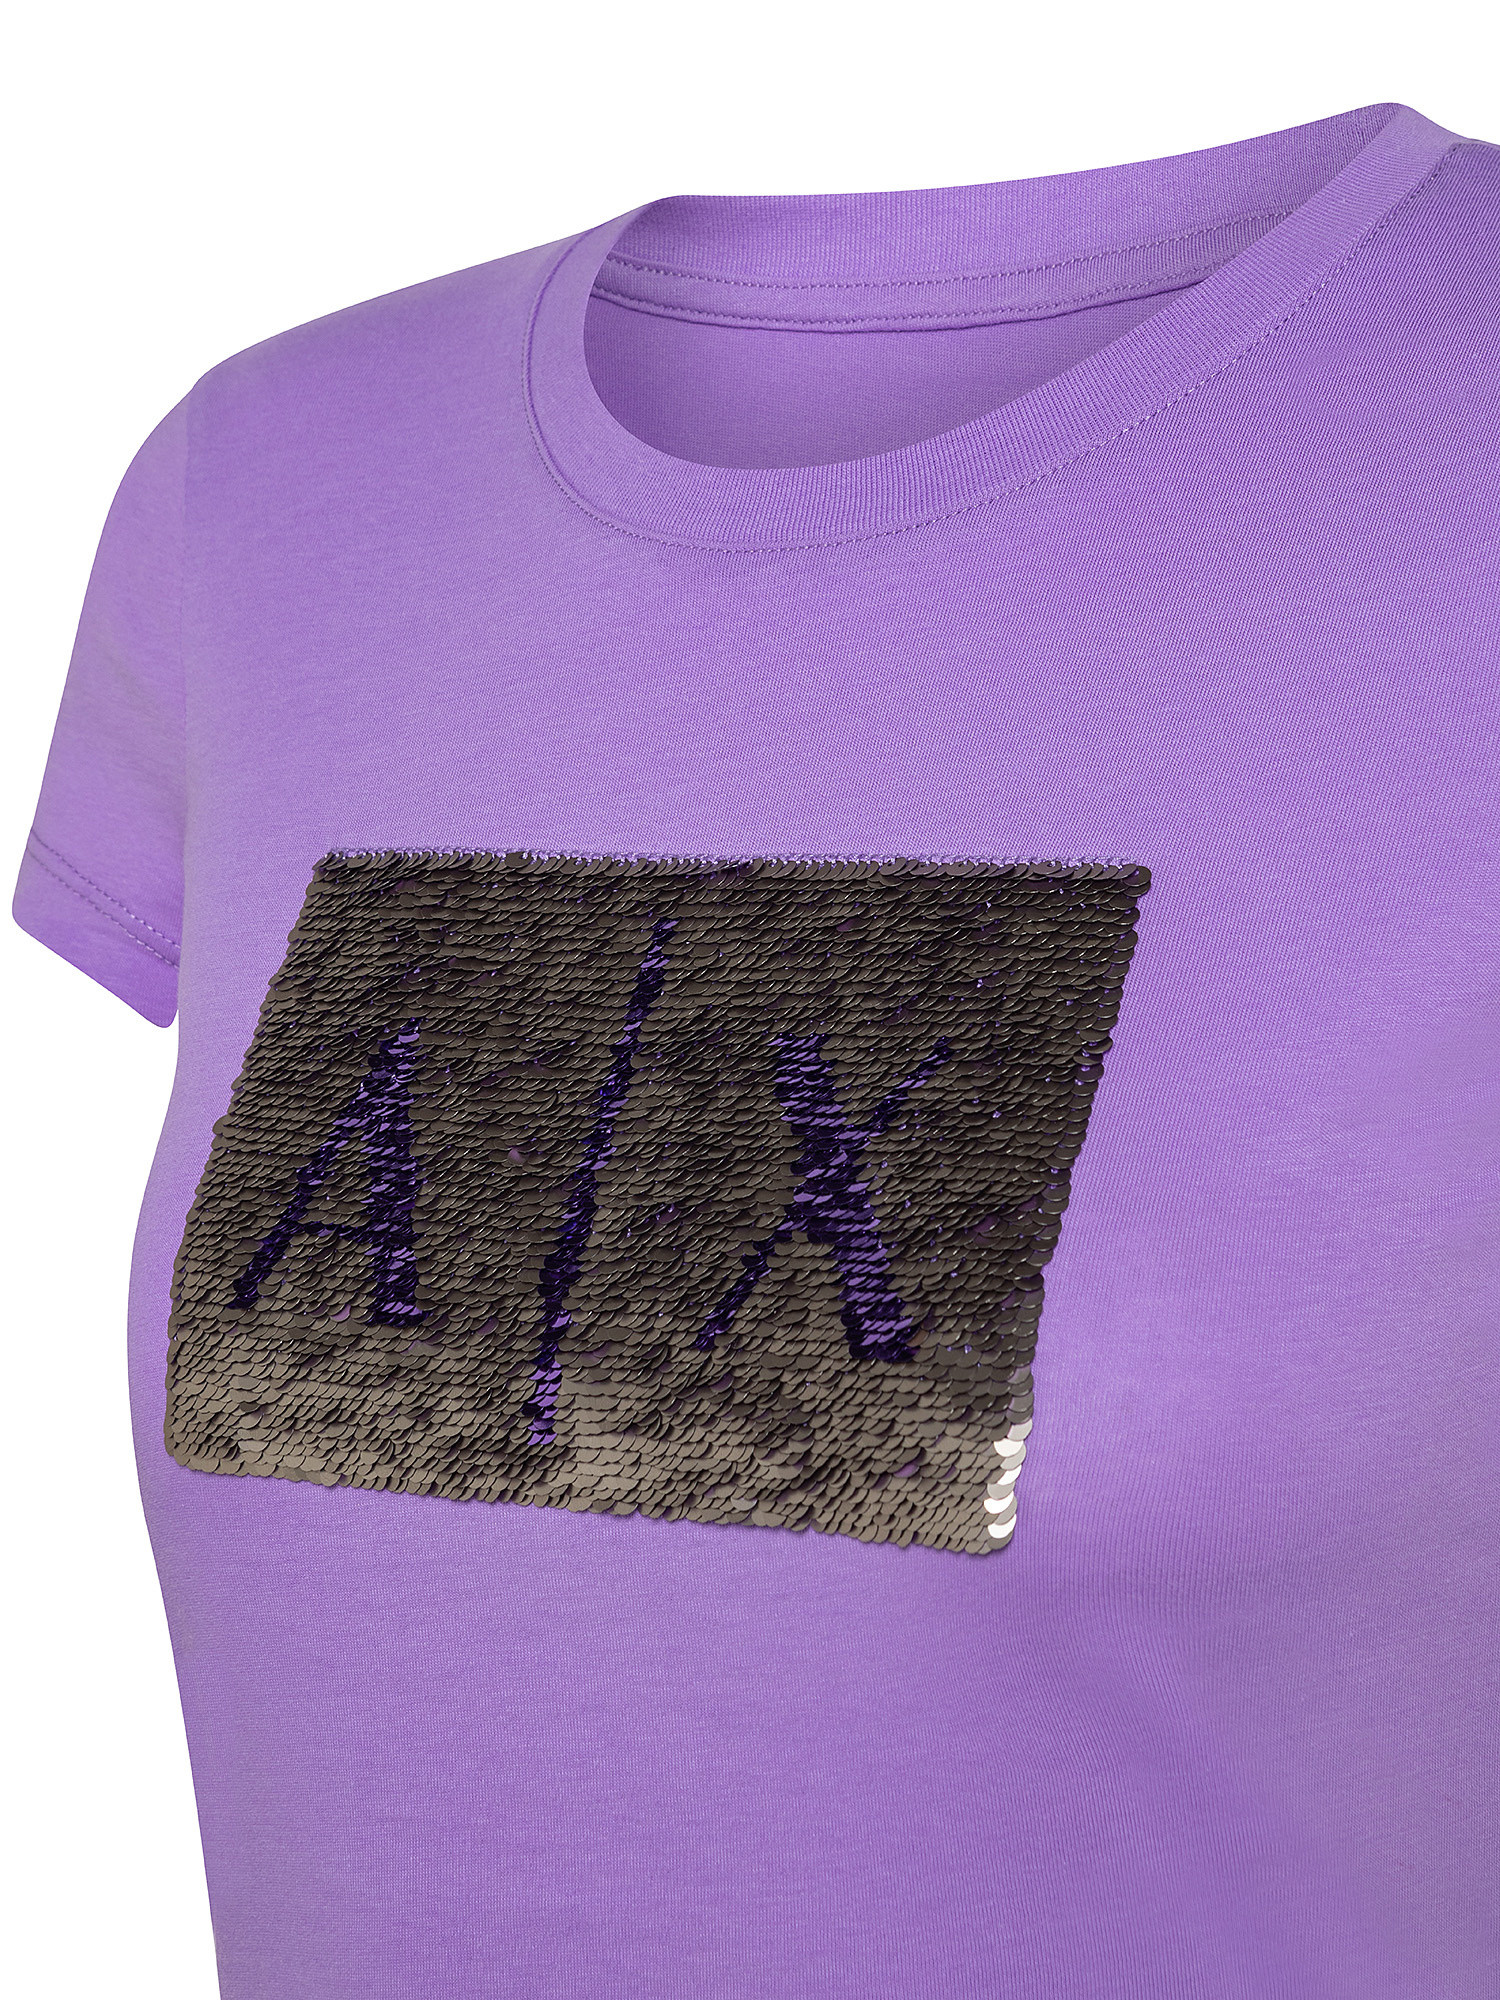 T-shirt con paillettes, Viola lilla, large image number 2